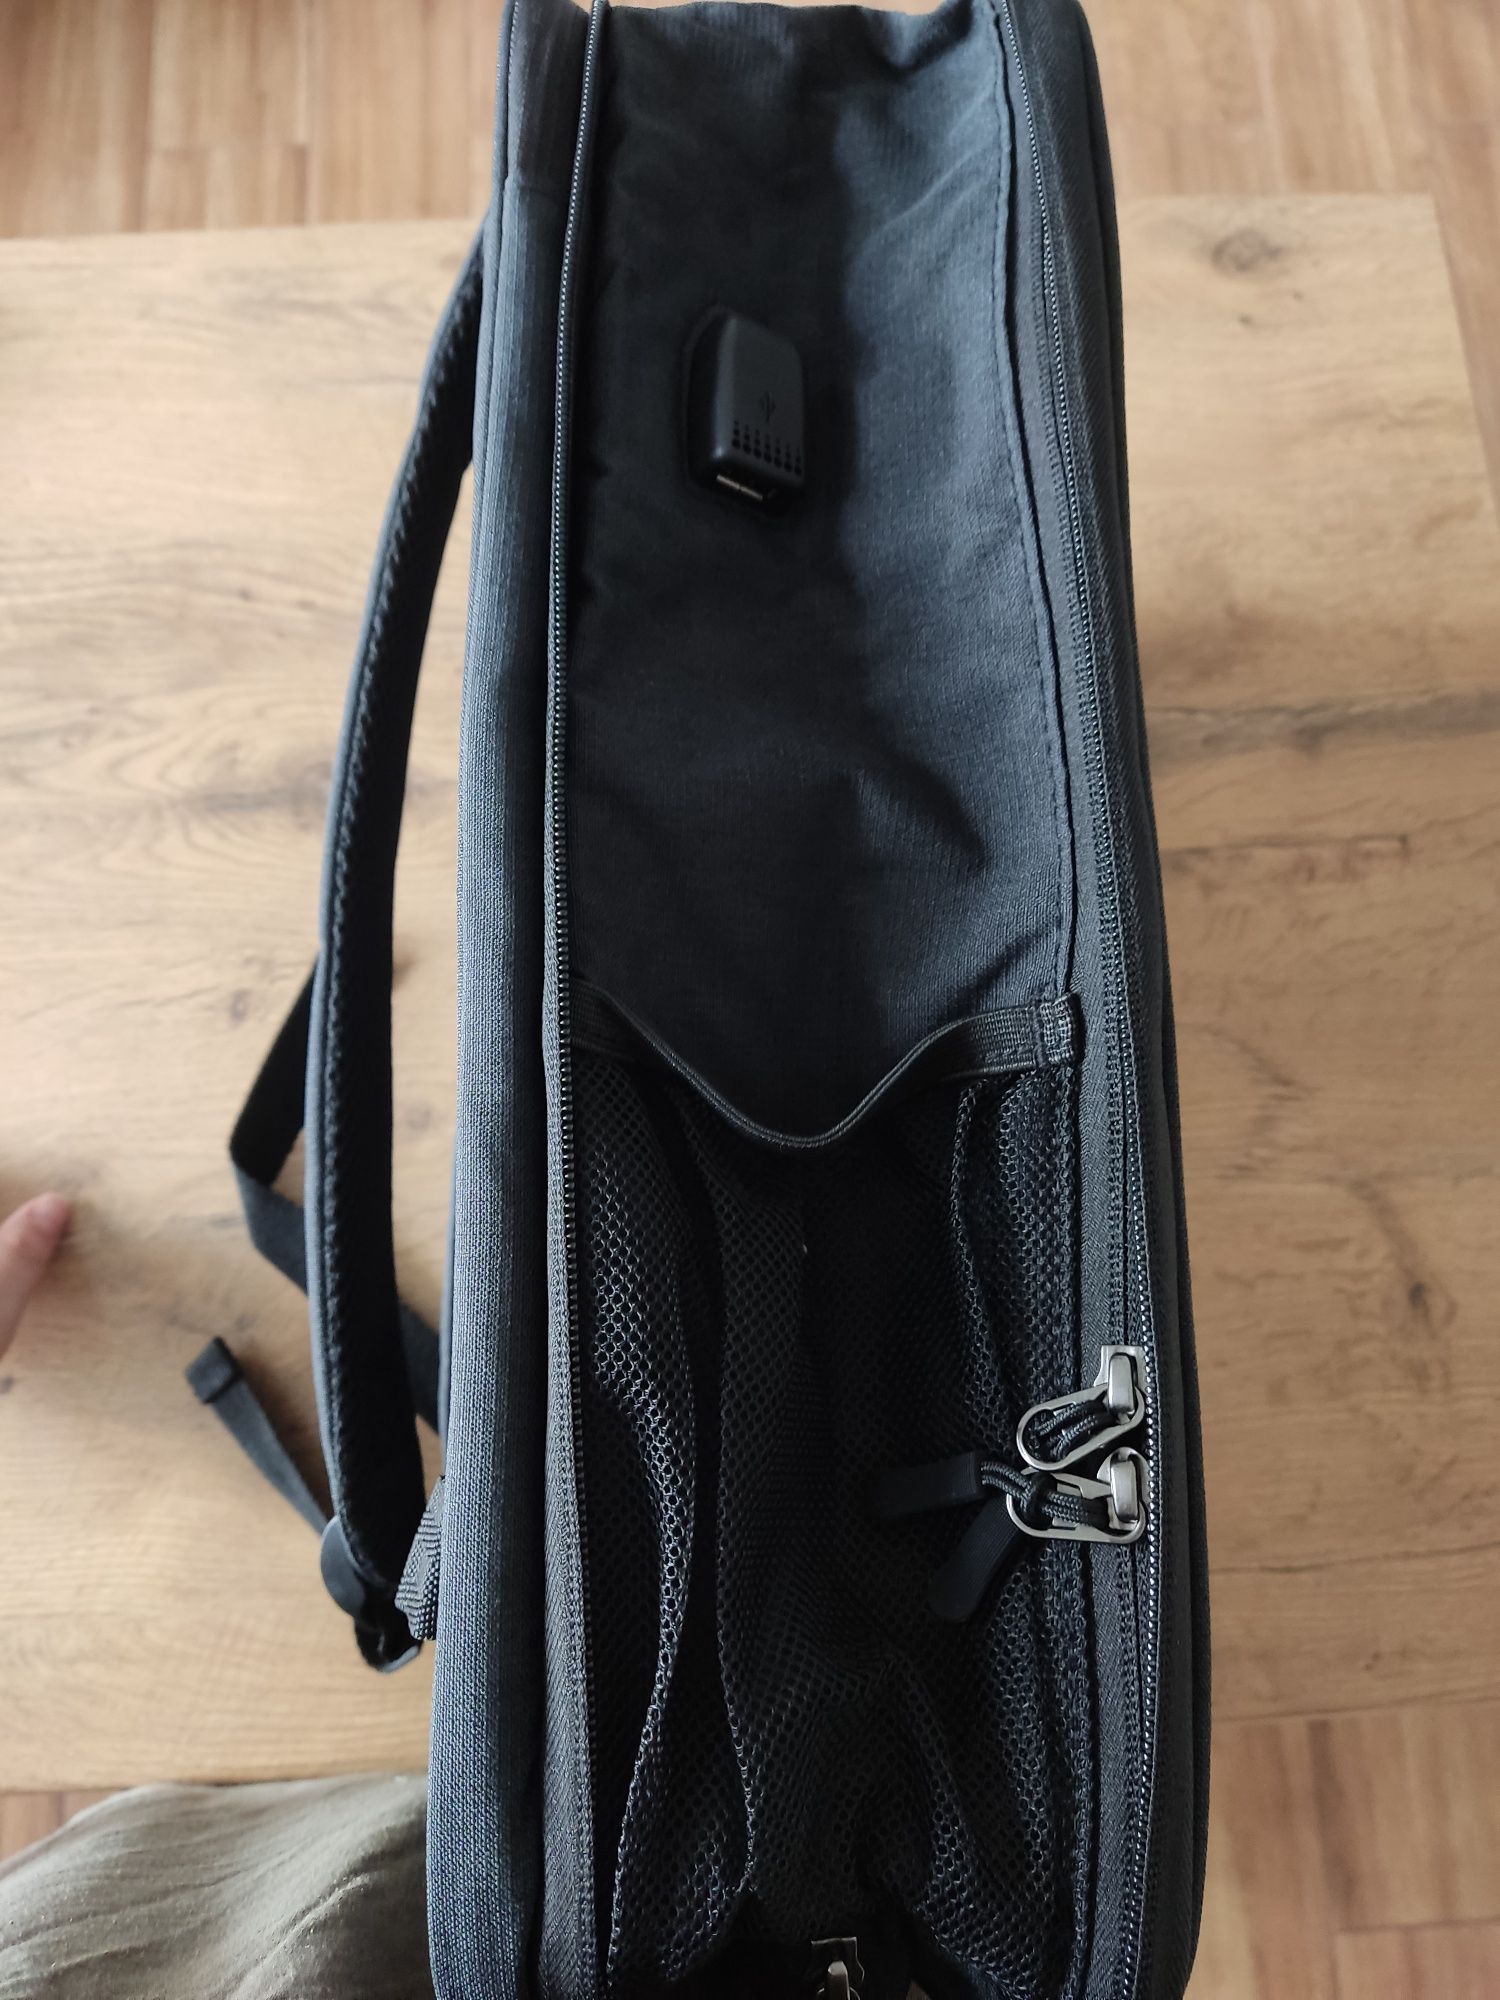 Plecak na laptopa ZINZ 15,6 " rozkładany wodoodporny teczka czarny